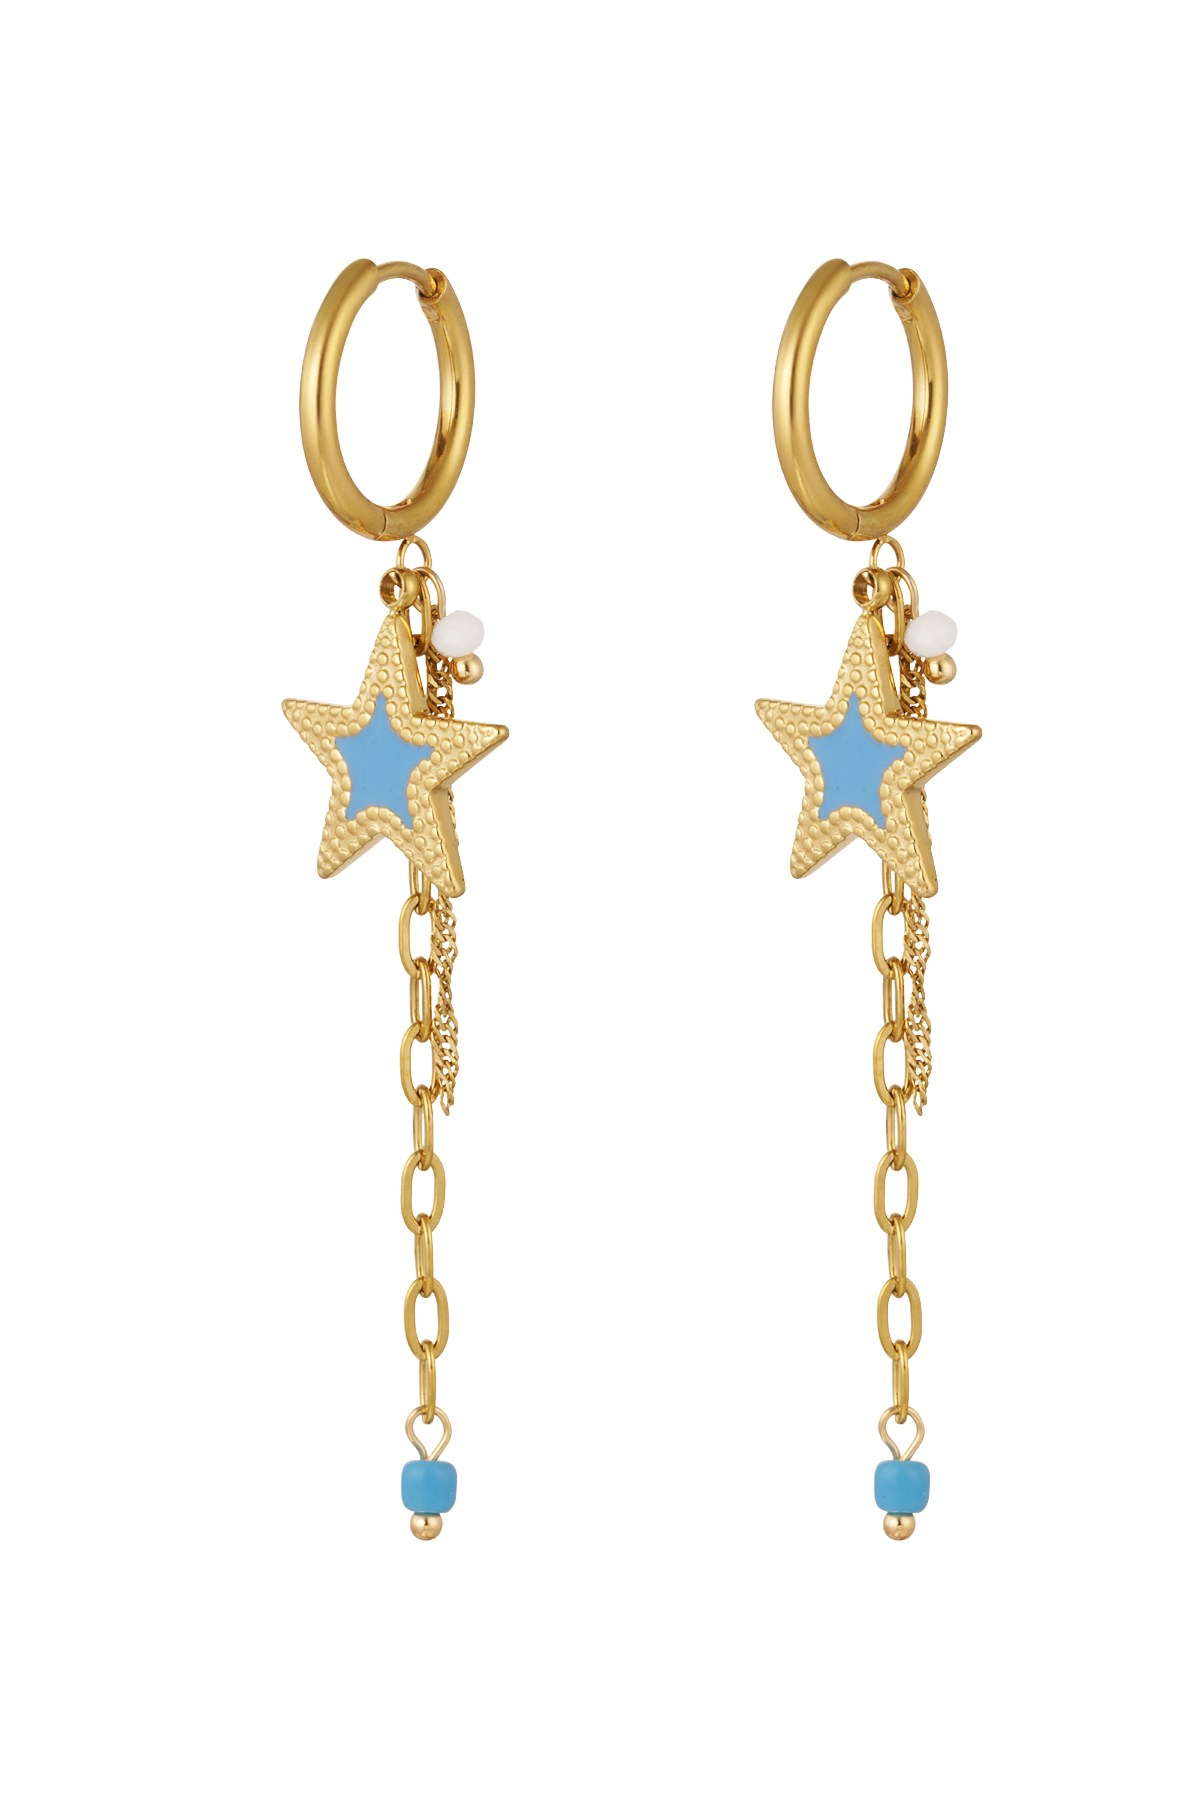 Boucles d'oreilles avec chaîne et étoile bleu - or h5 